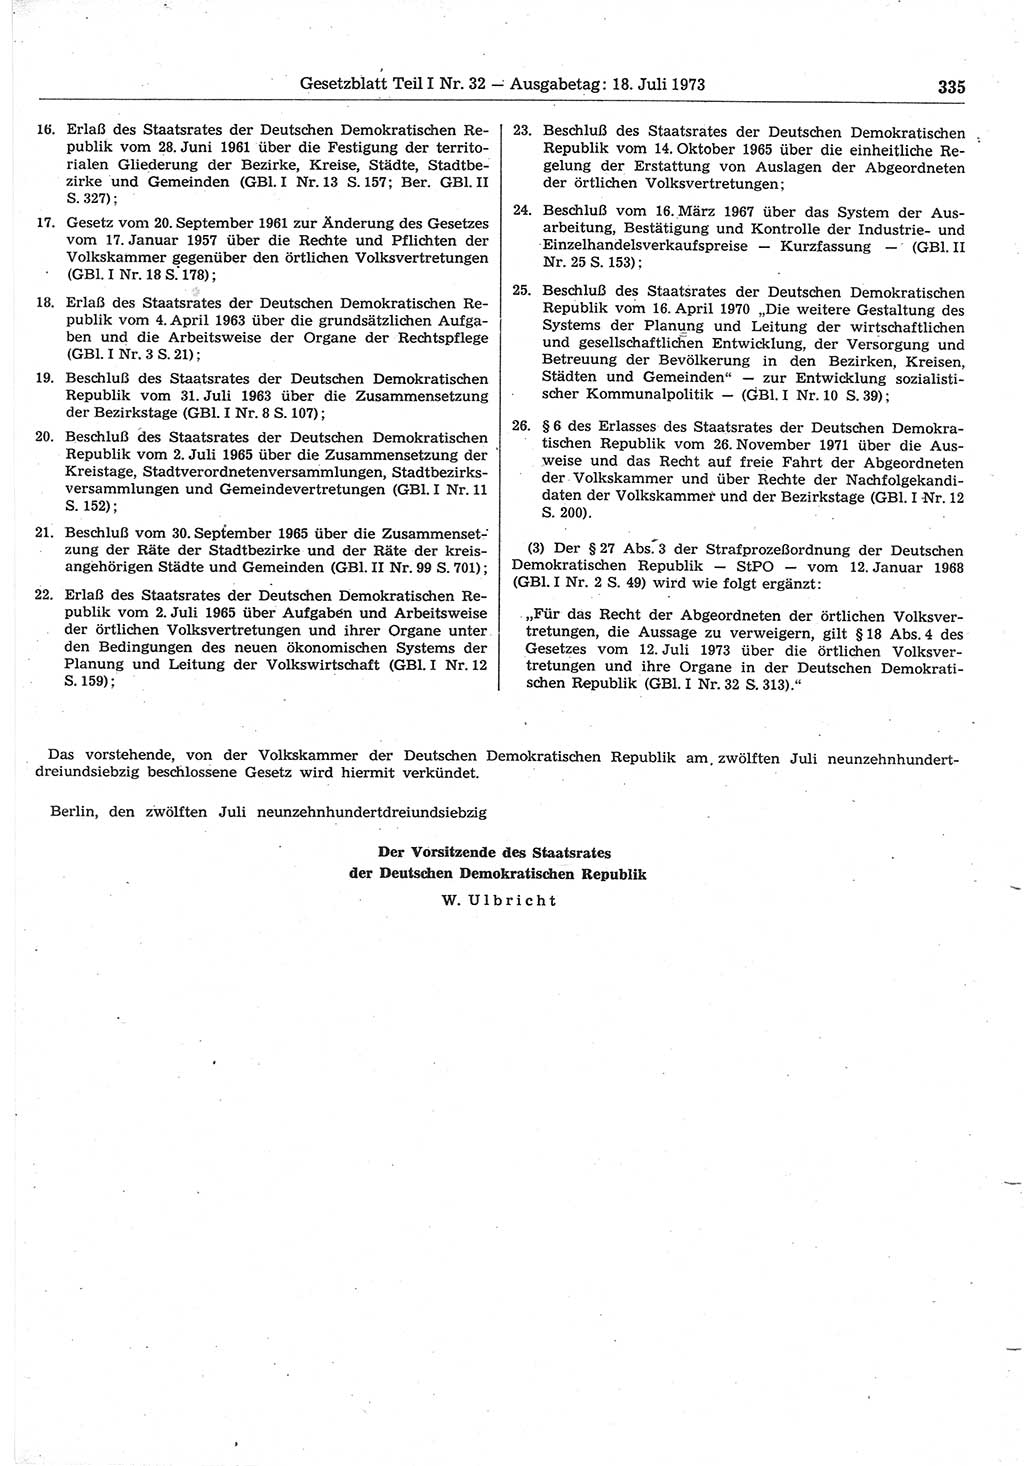 Gesetzblatt (GBl.) der Deutschen Demokratischen Republik (DDR) Teil Ⅰ 1973, Seite 335 (GBl. DDR Ⅰ 1973, S. 335)